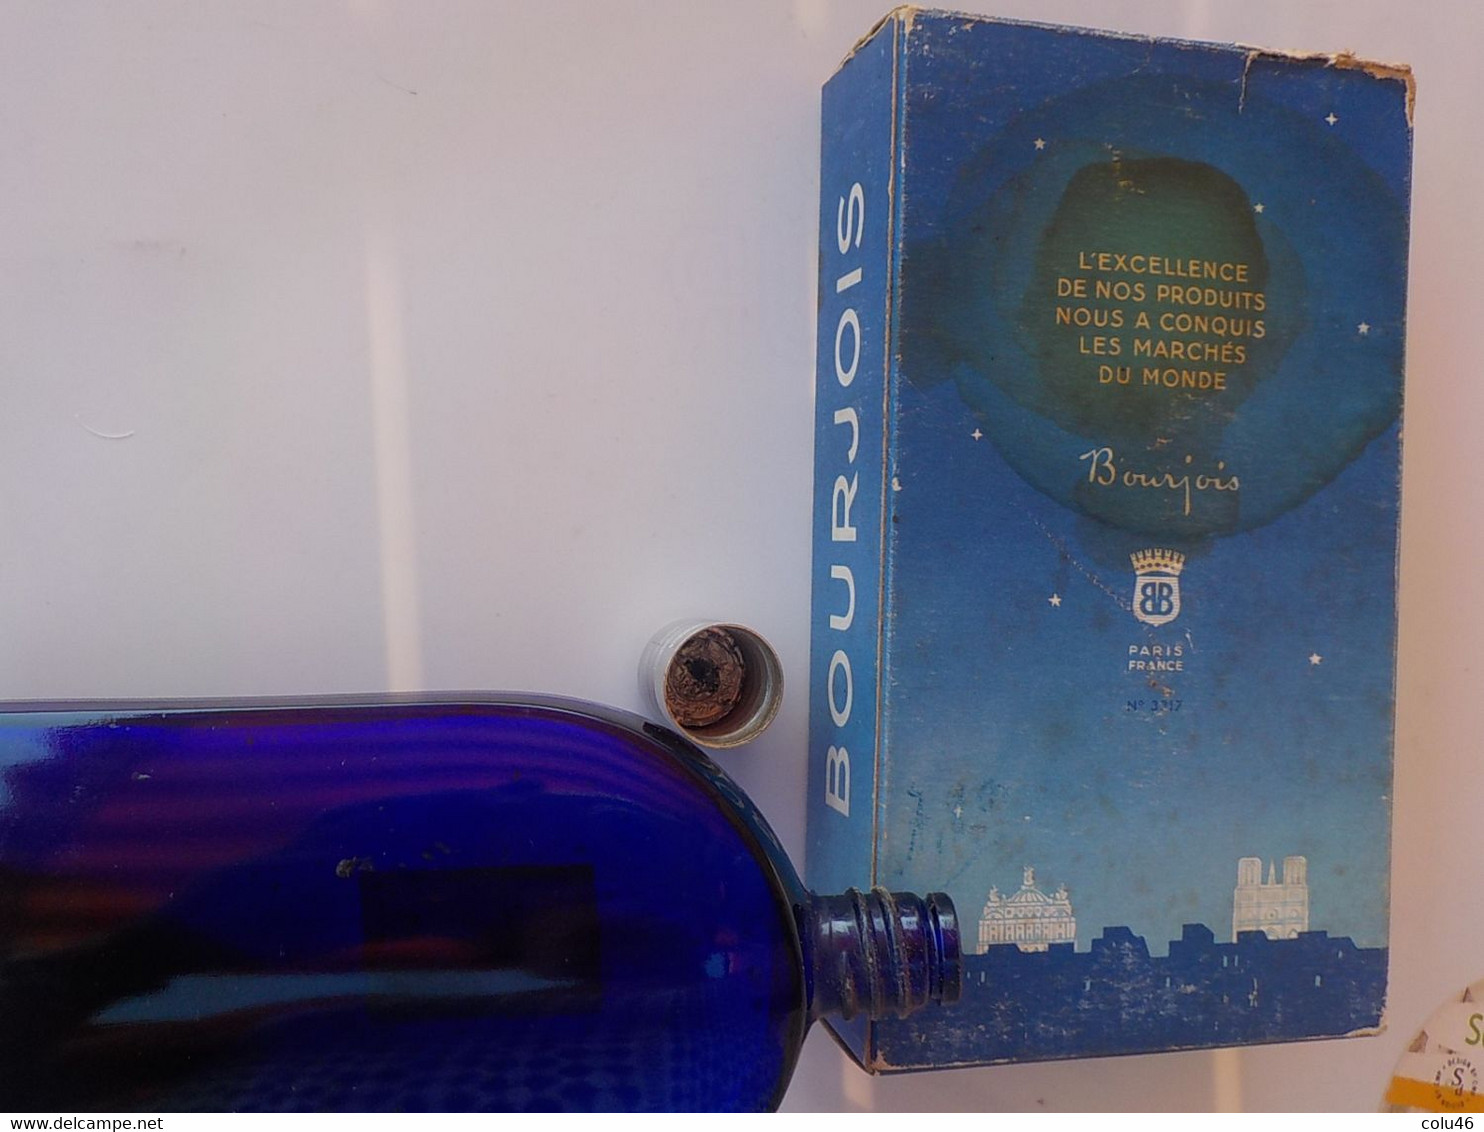 1950 Soir de Paris Bourjois Grand modèle dans sa boîte Eau de Cologne 75 ° 15 cm bouchon à visser